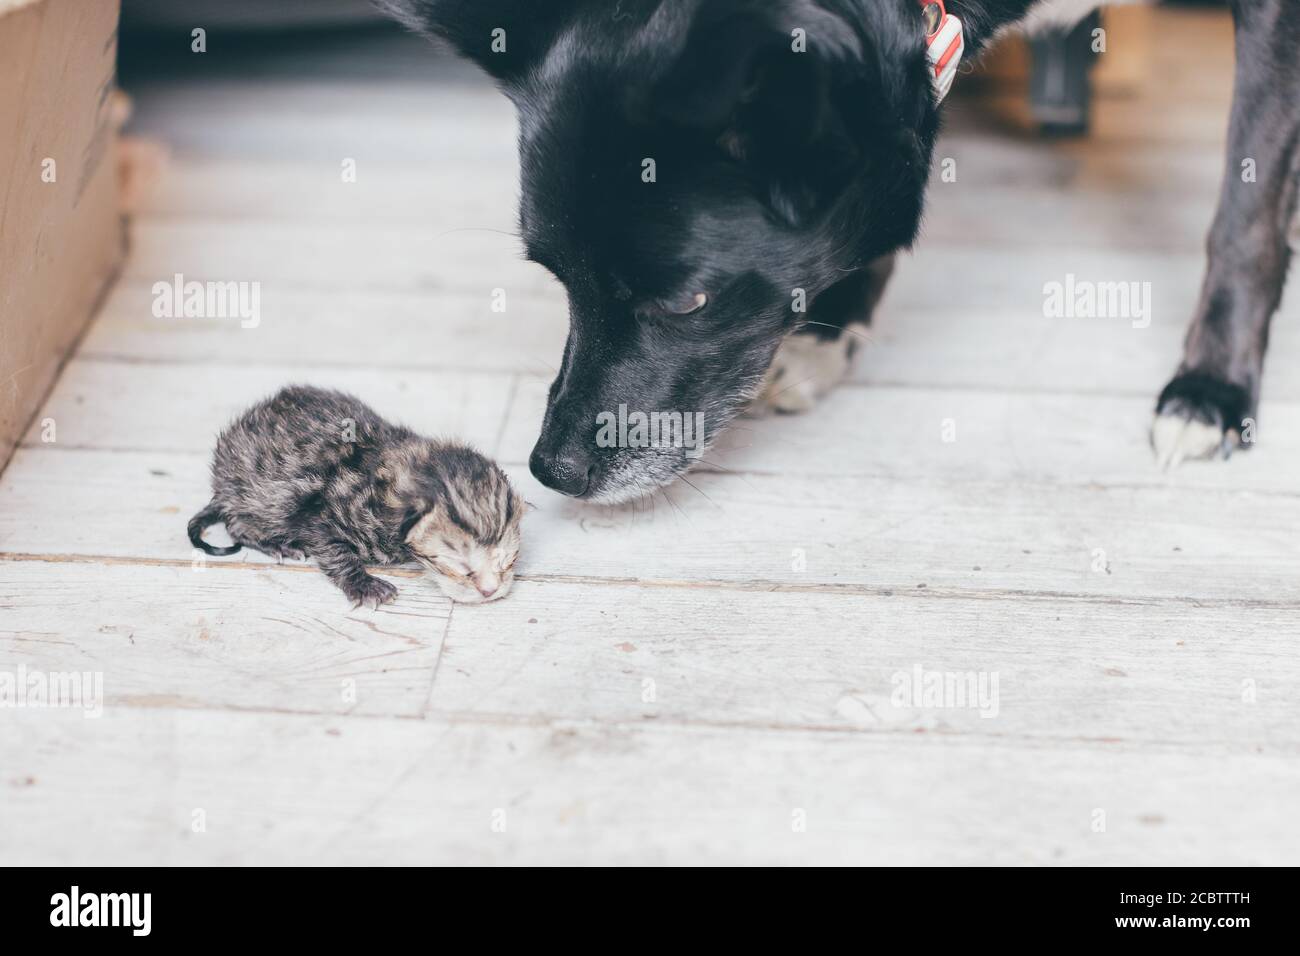 Chien noir qui prend un petit nouveau-né tabby chaton et qui tente d'aider - adoption, diversité, cohabitation, charité et concept de soutien Banque D'Images